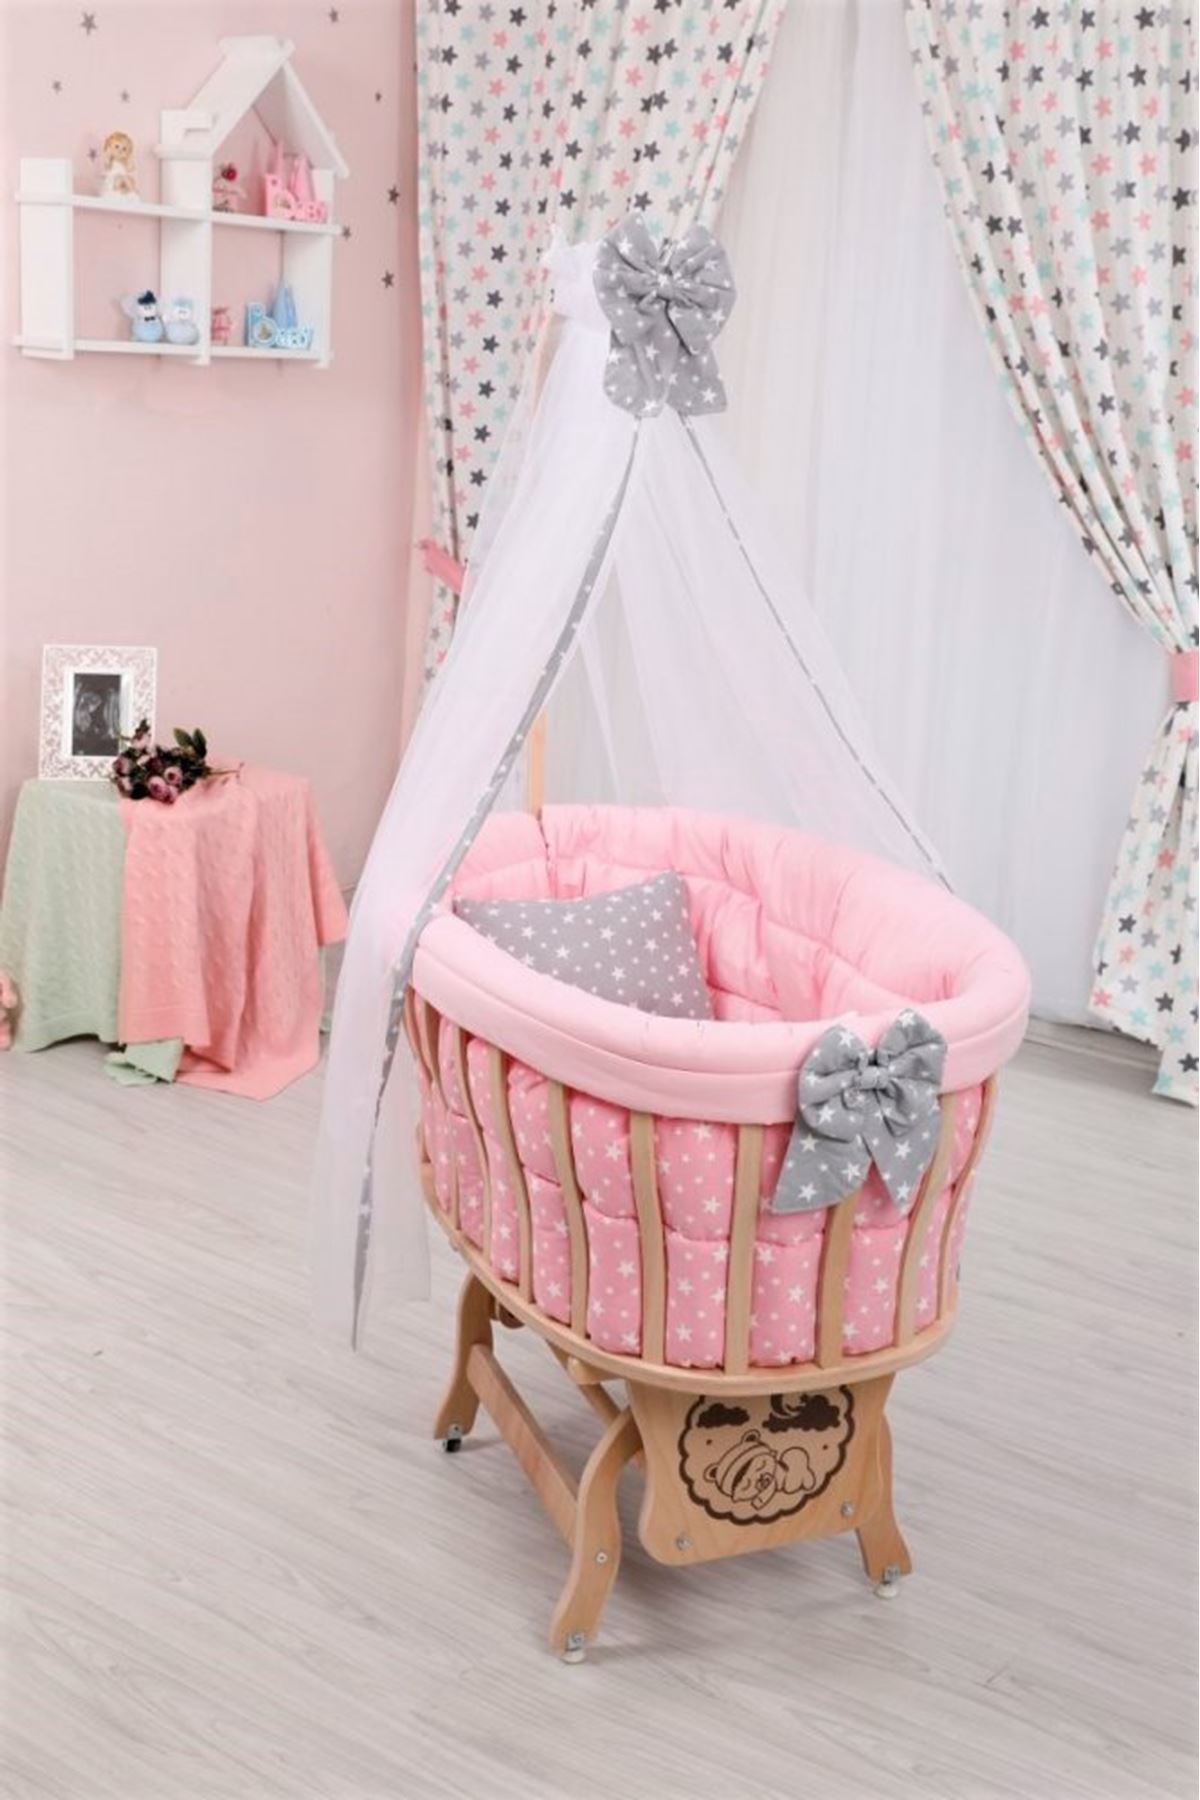 Wooden Basket Cradle With "Pink Star" Set